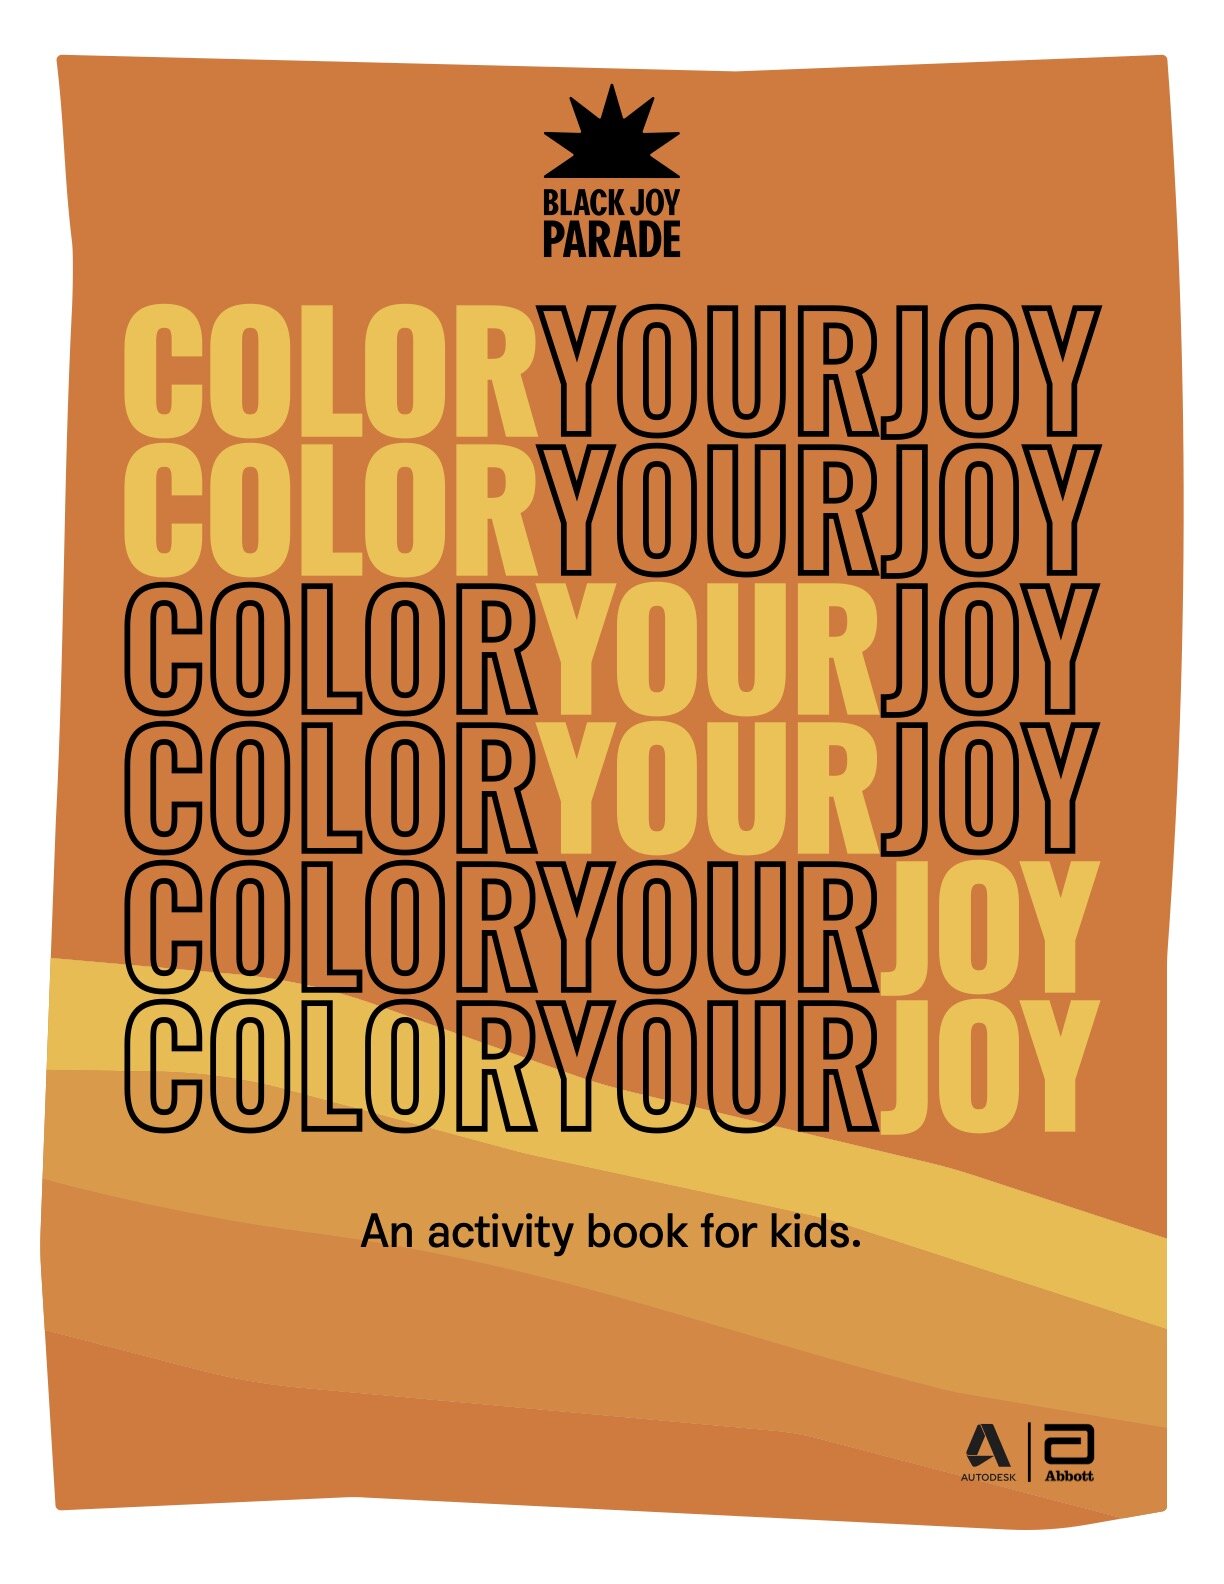 Color Joy Books - Books by Color Joy